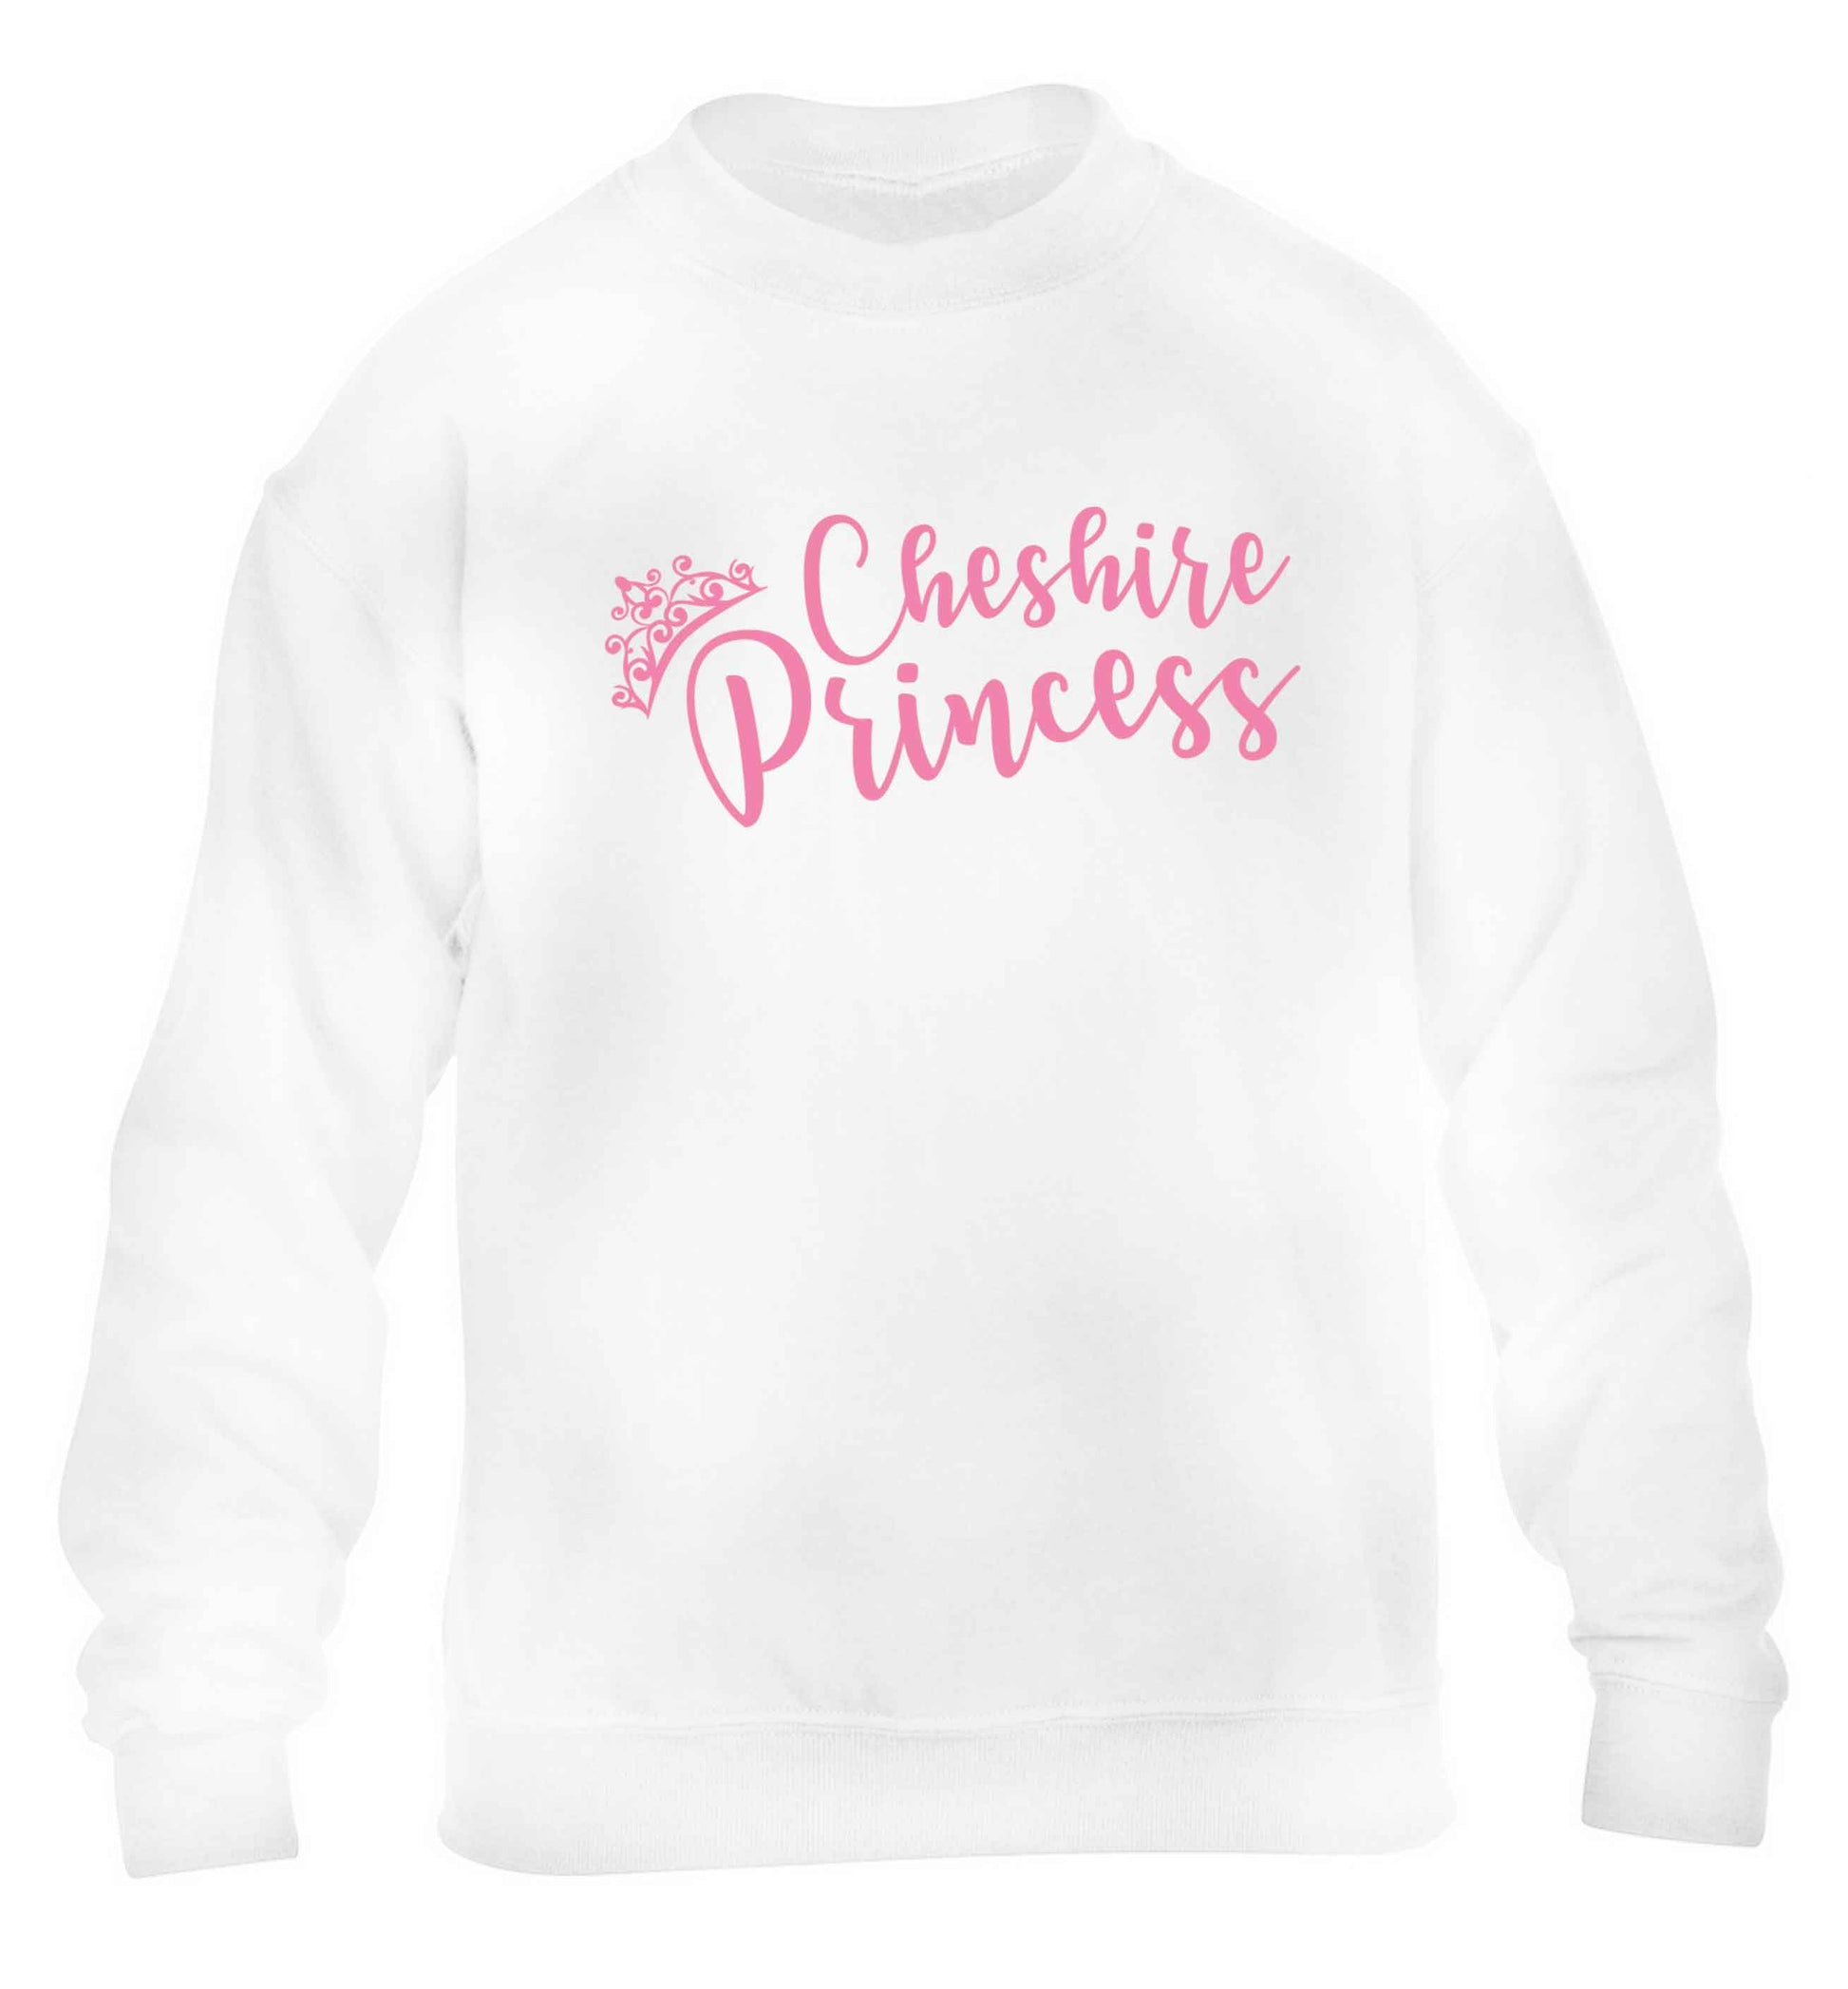 Cheshire princess children's white sweater 12-13 Years